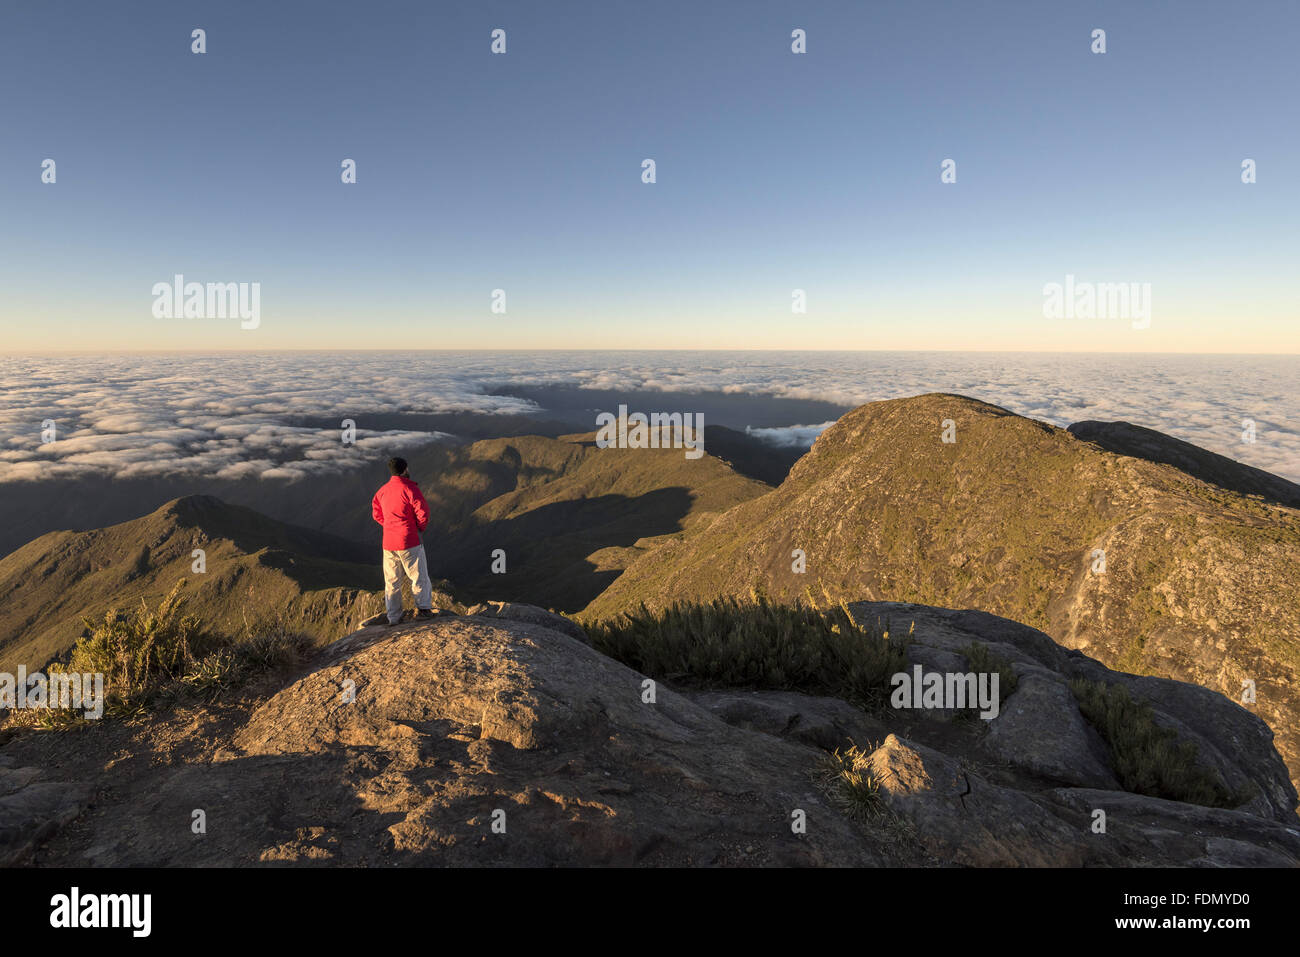 Turista no cume do Pico da Bandeira ao amanhecer - Parque Nacional do Caparaó Stock Photo